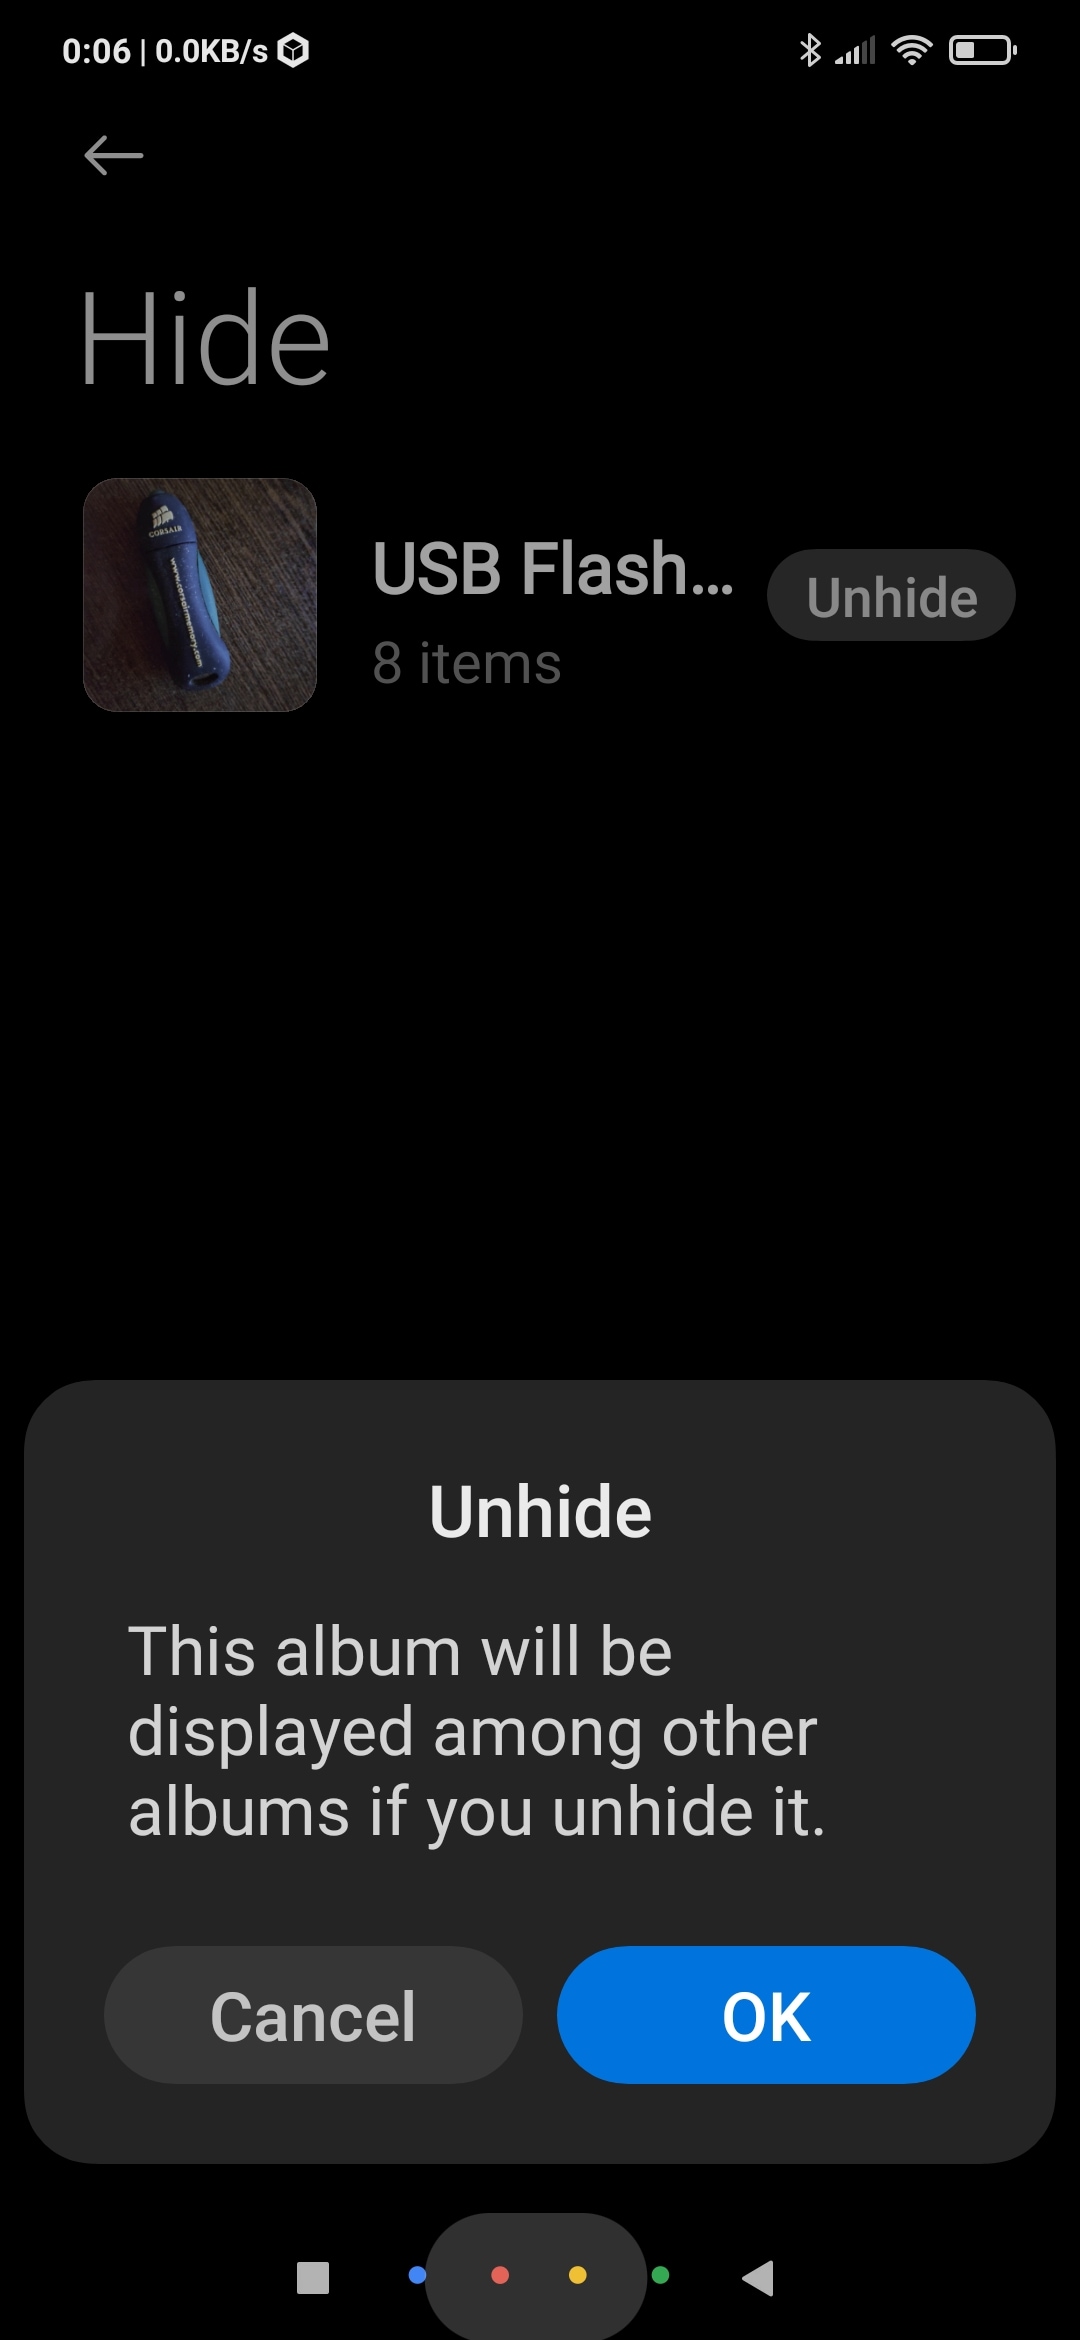 Gallery Unhide Album Confirmation